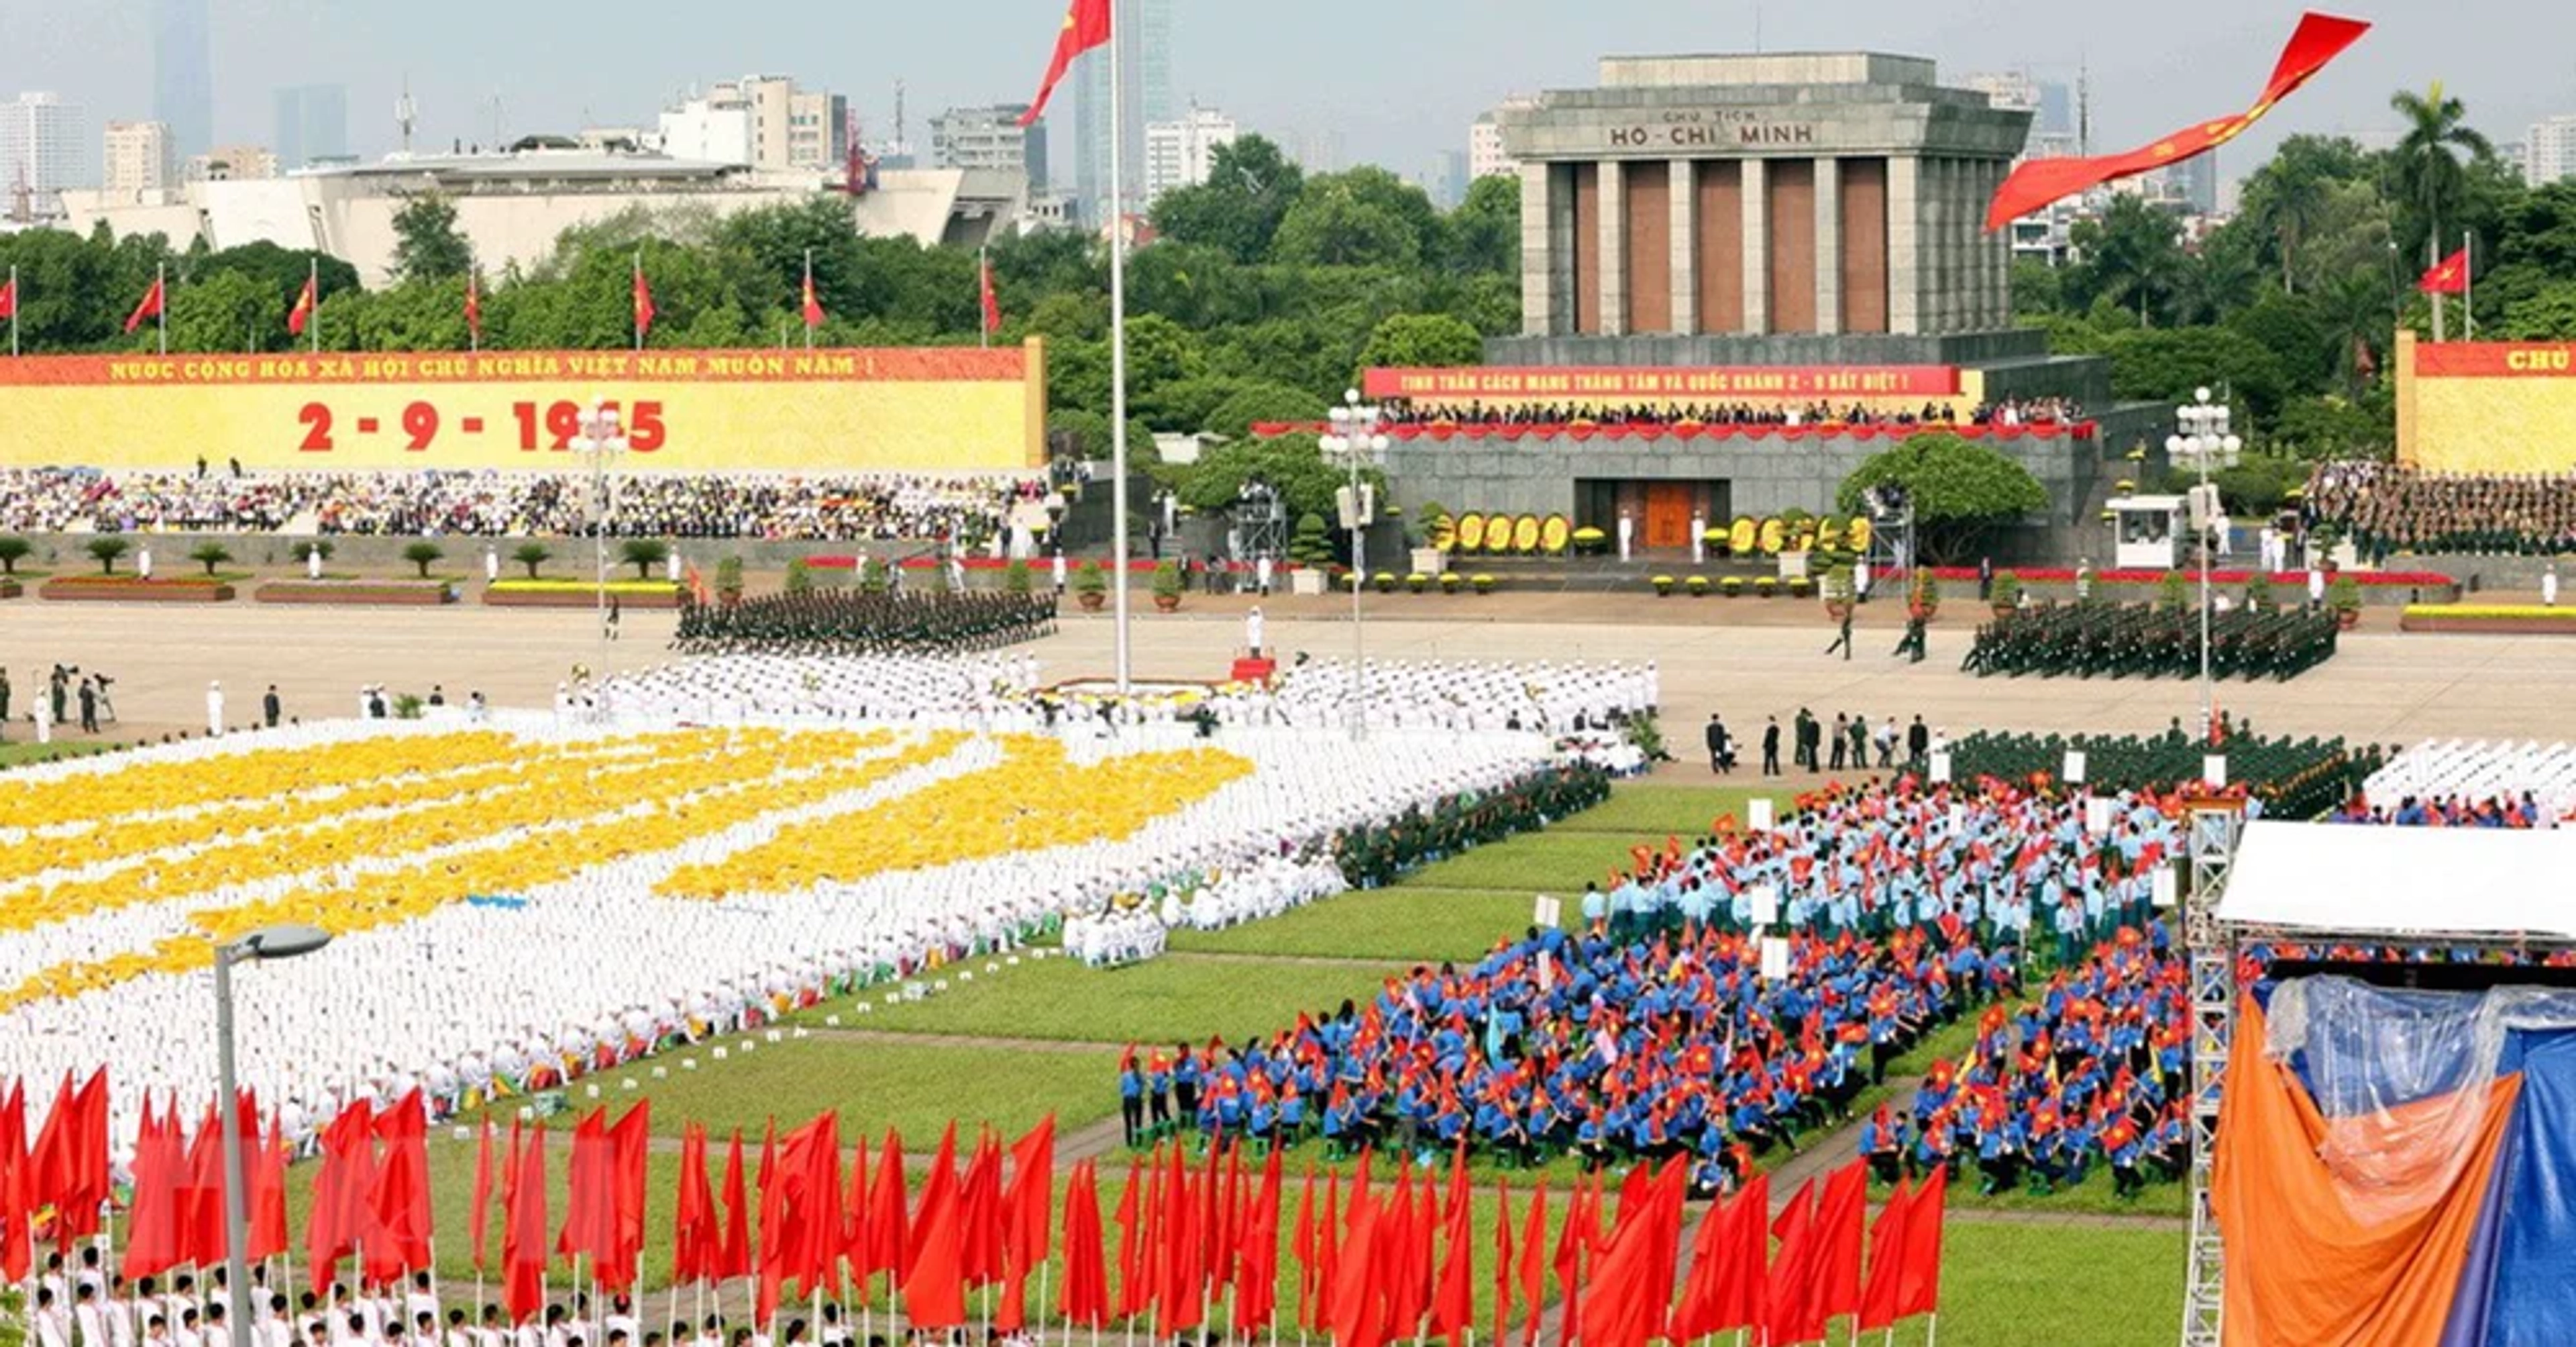 Khám phá Quảng Trường Ba Đình – Quảng Trường lớn nhất Việt Nam